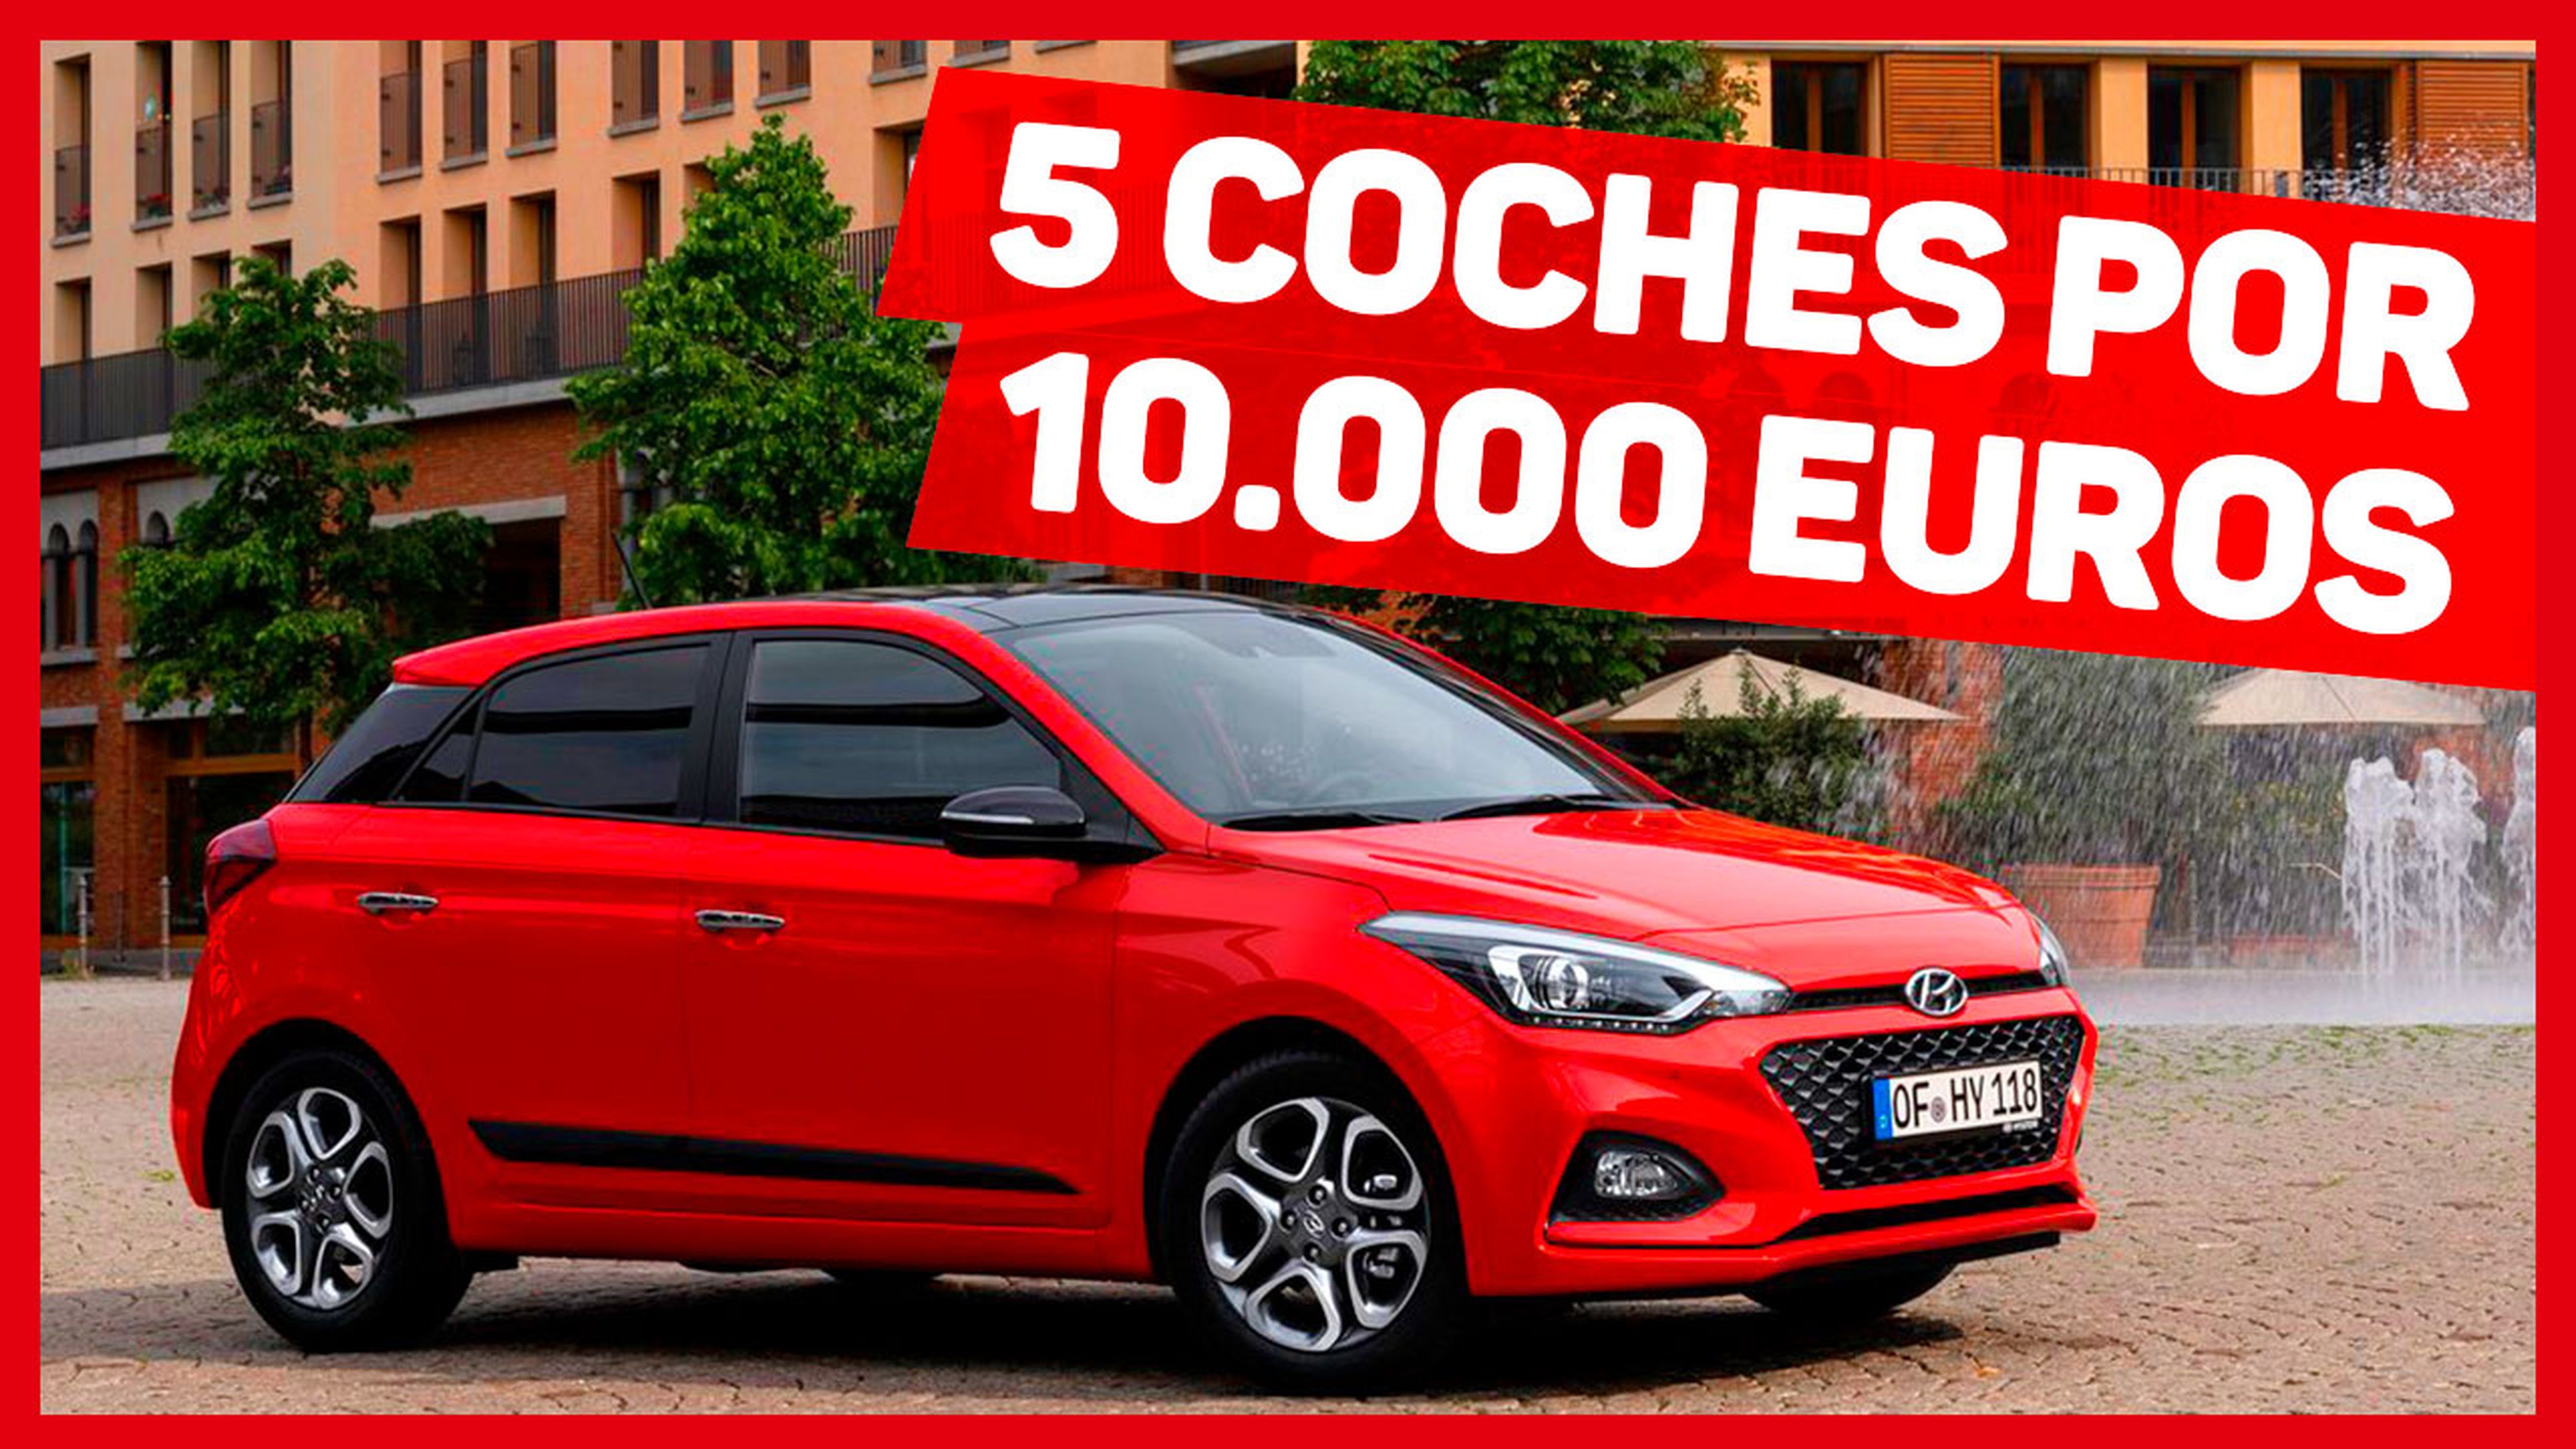 VÍDEO: Estos son los 5 coches por 10.000 euros que te puedes comprar en 2020